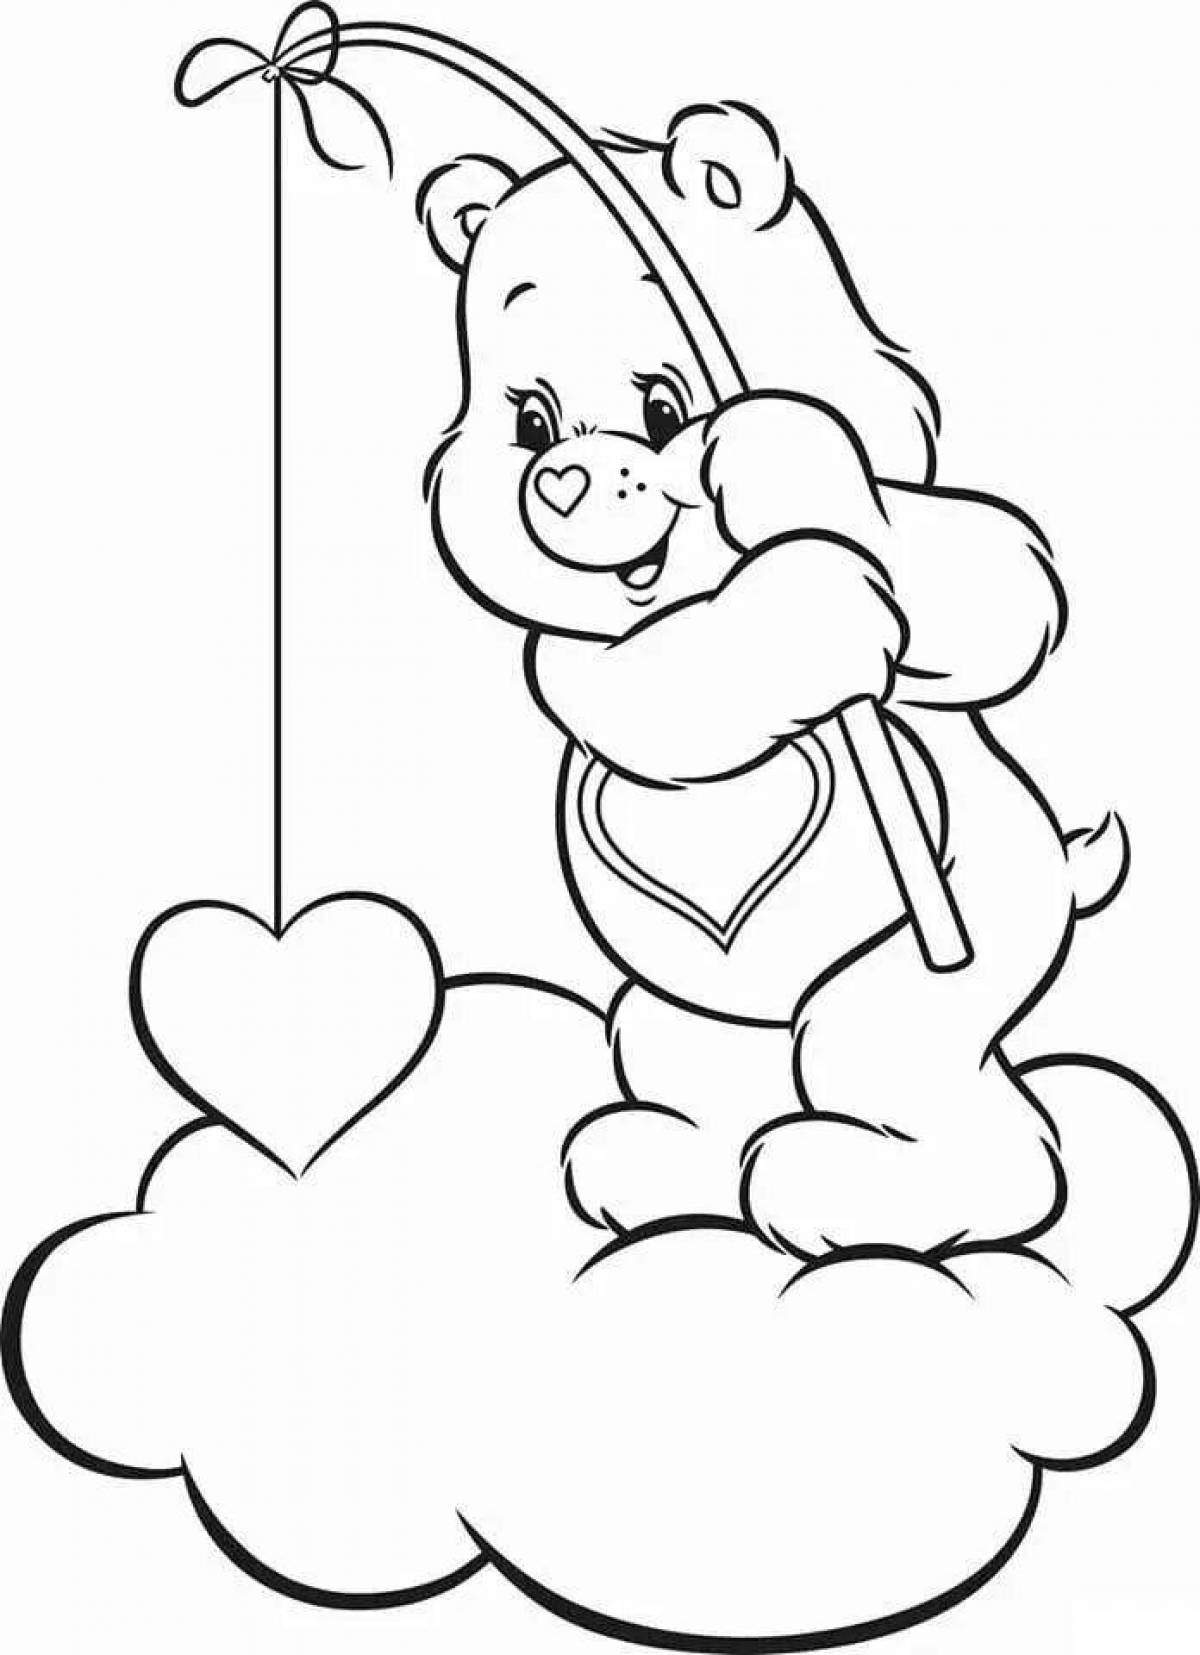 Joyful teddy bear with balloons